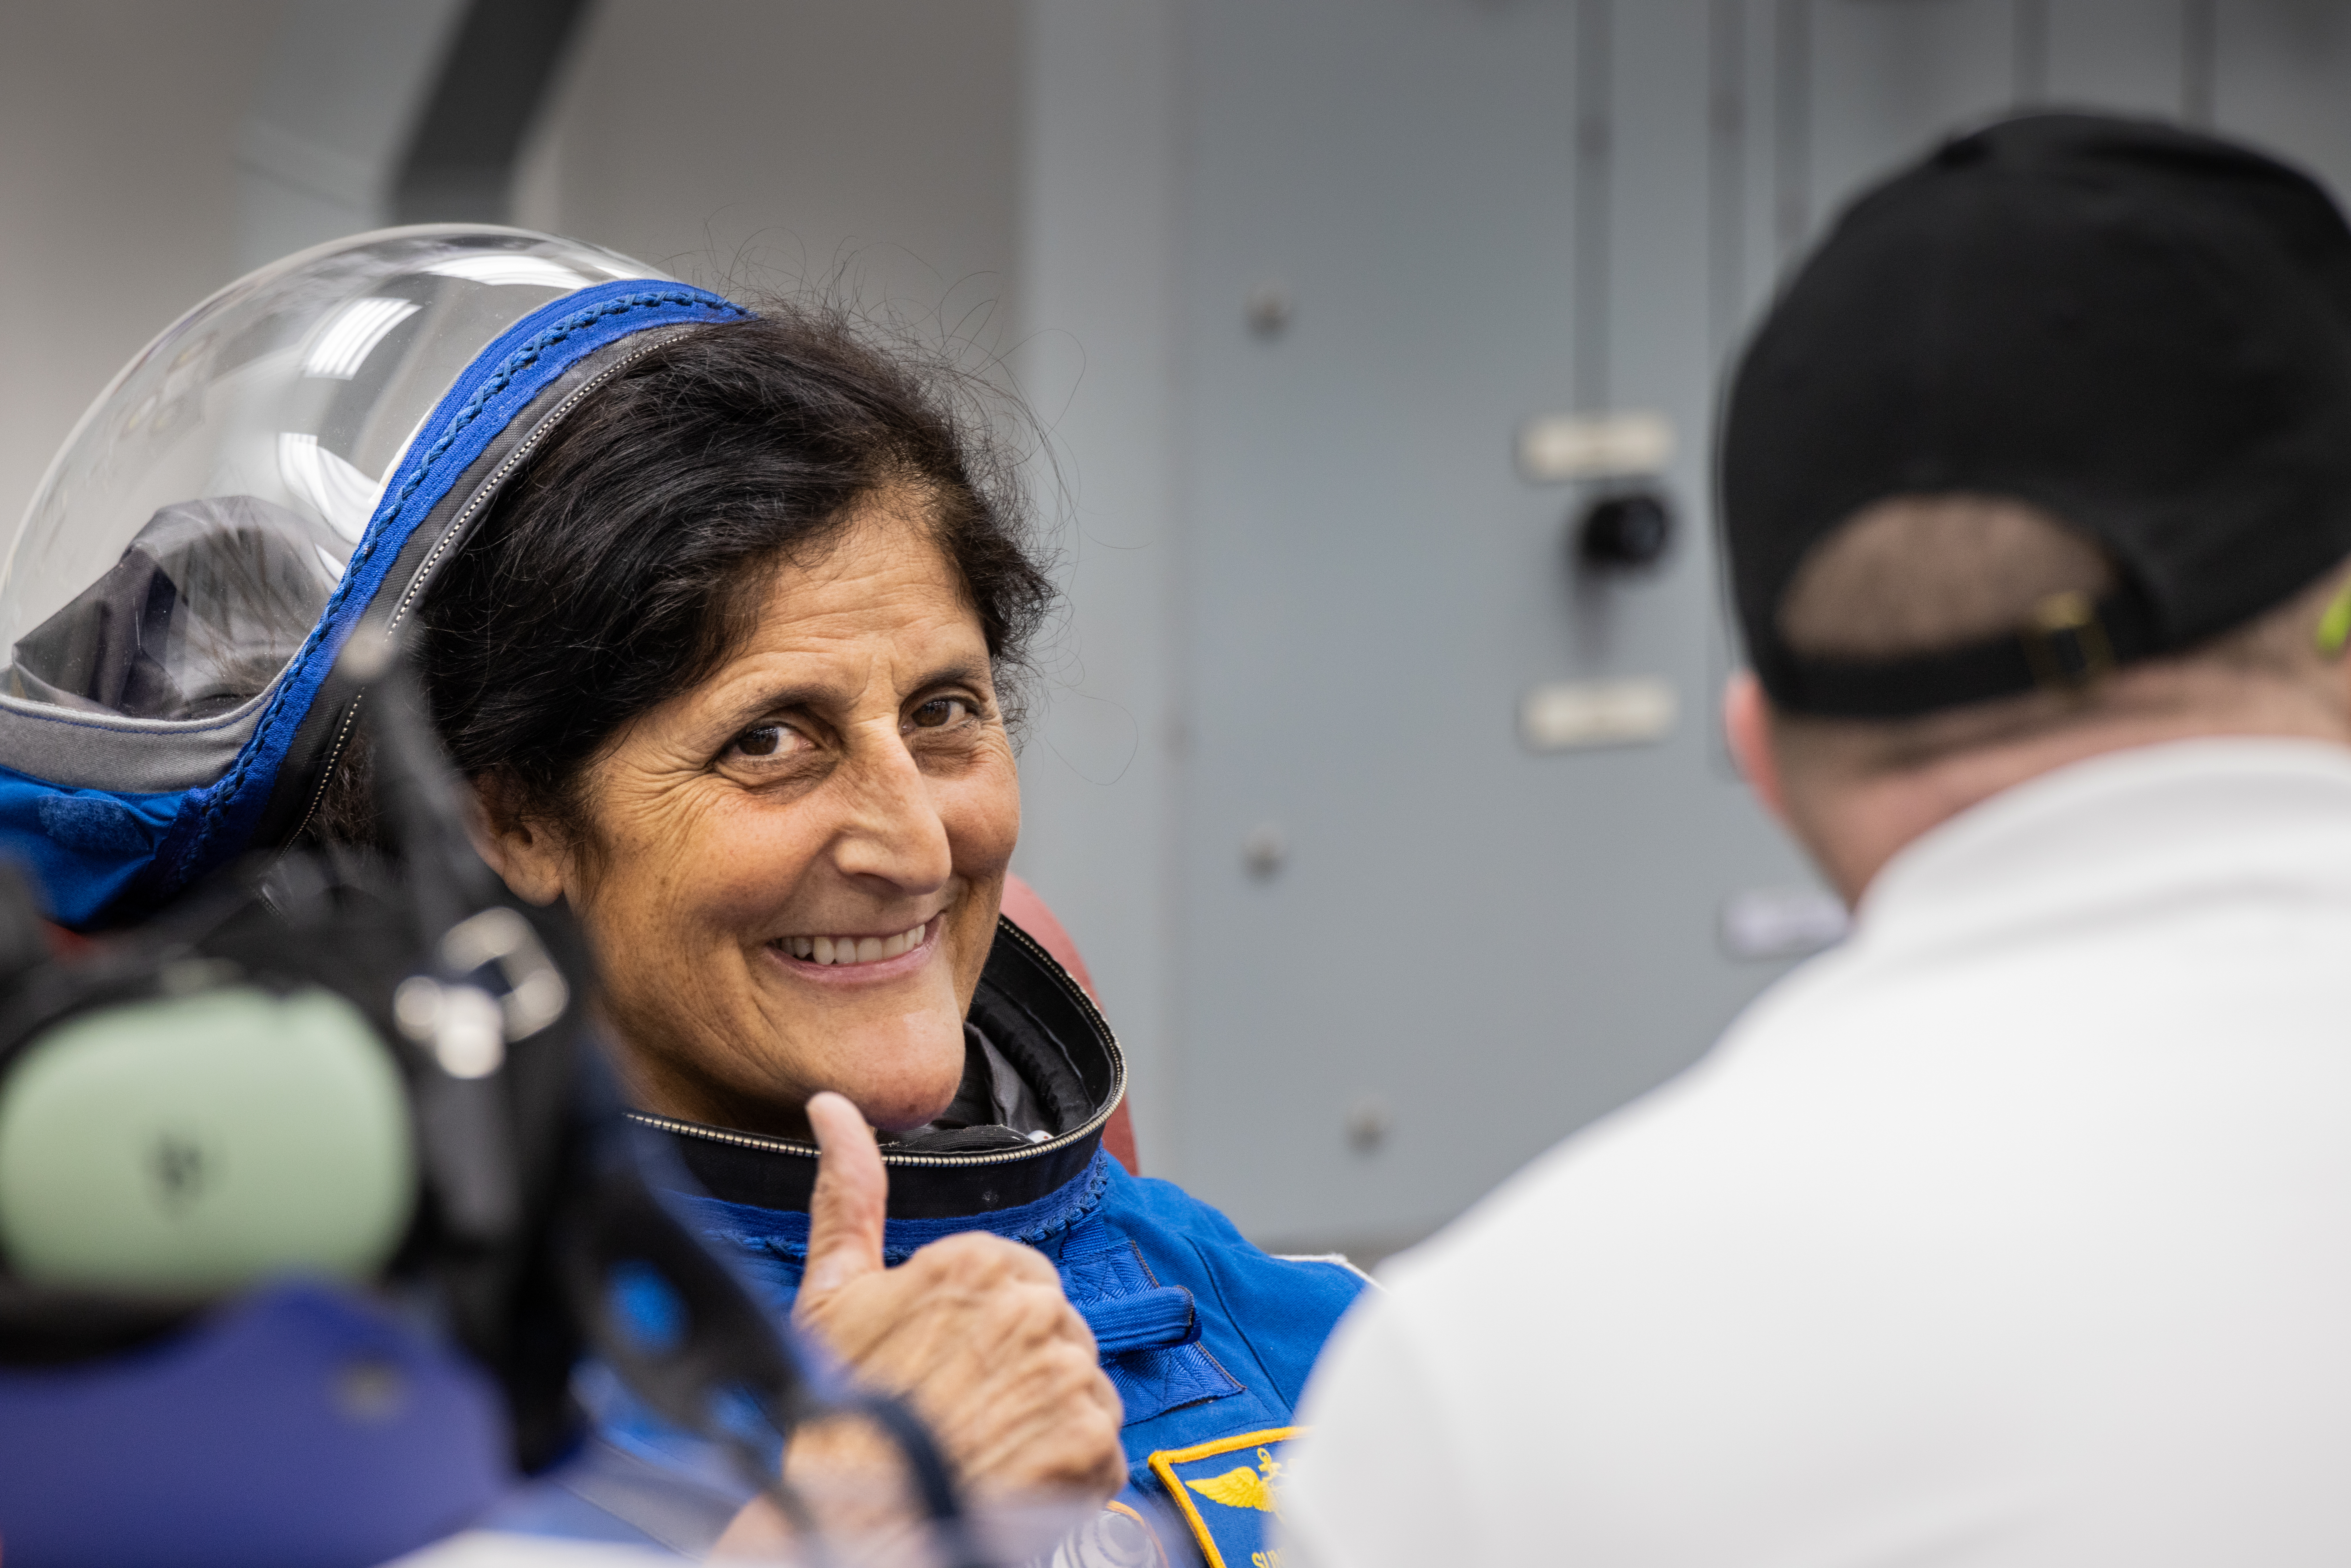 Astronaut Suni Williams Prepares for Crew Flight Test